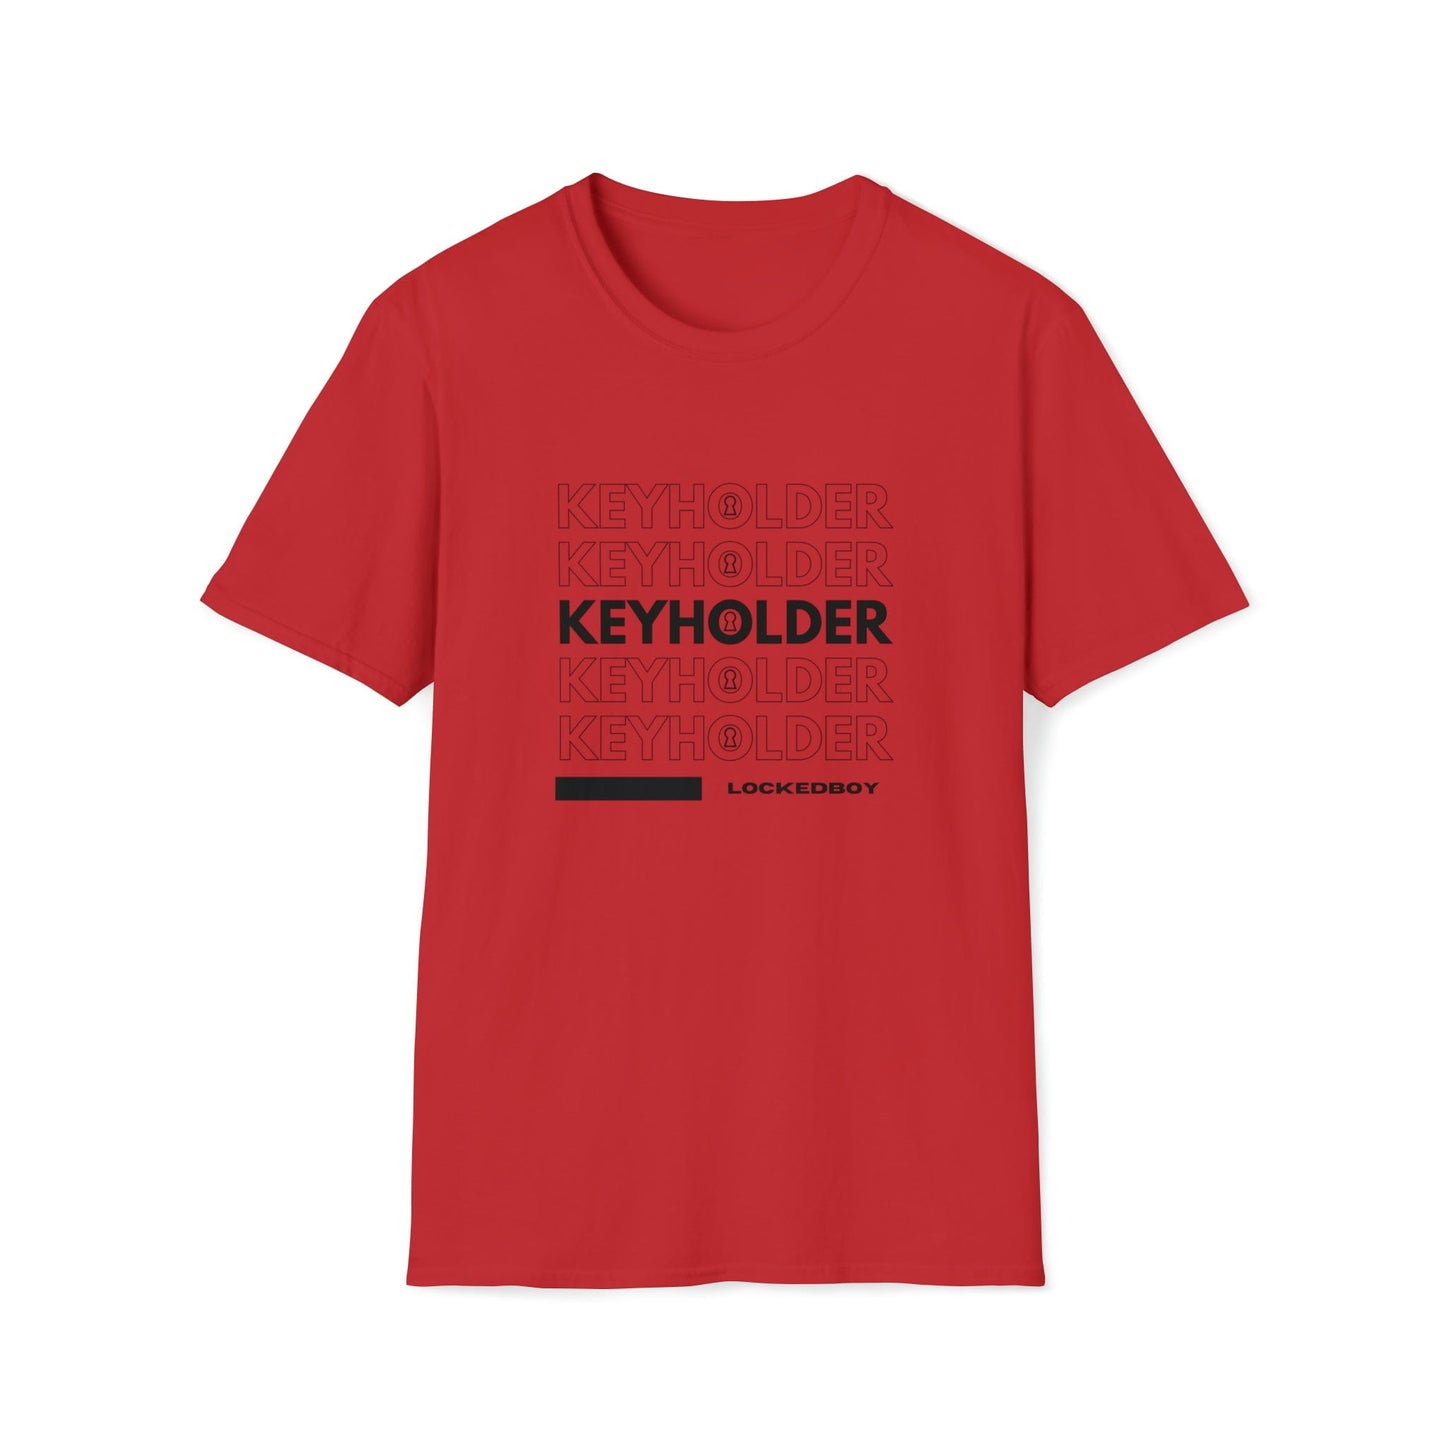 T-Shirt Red / S KEYHOLDER bag Inspo - Chastity Shirts by LockedBoy Athletics LEATHERDADDY BATOR